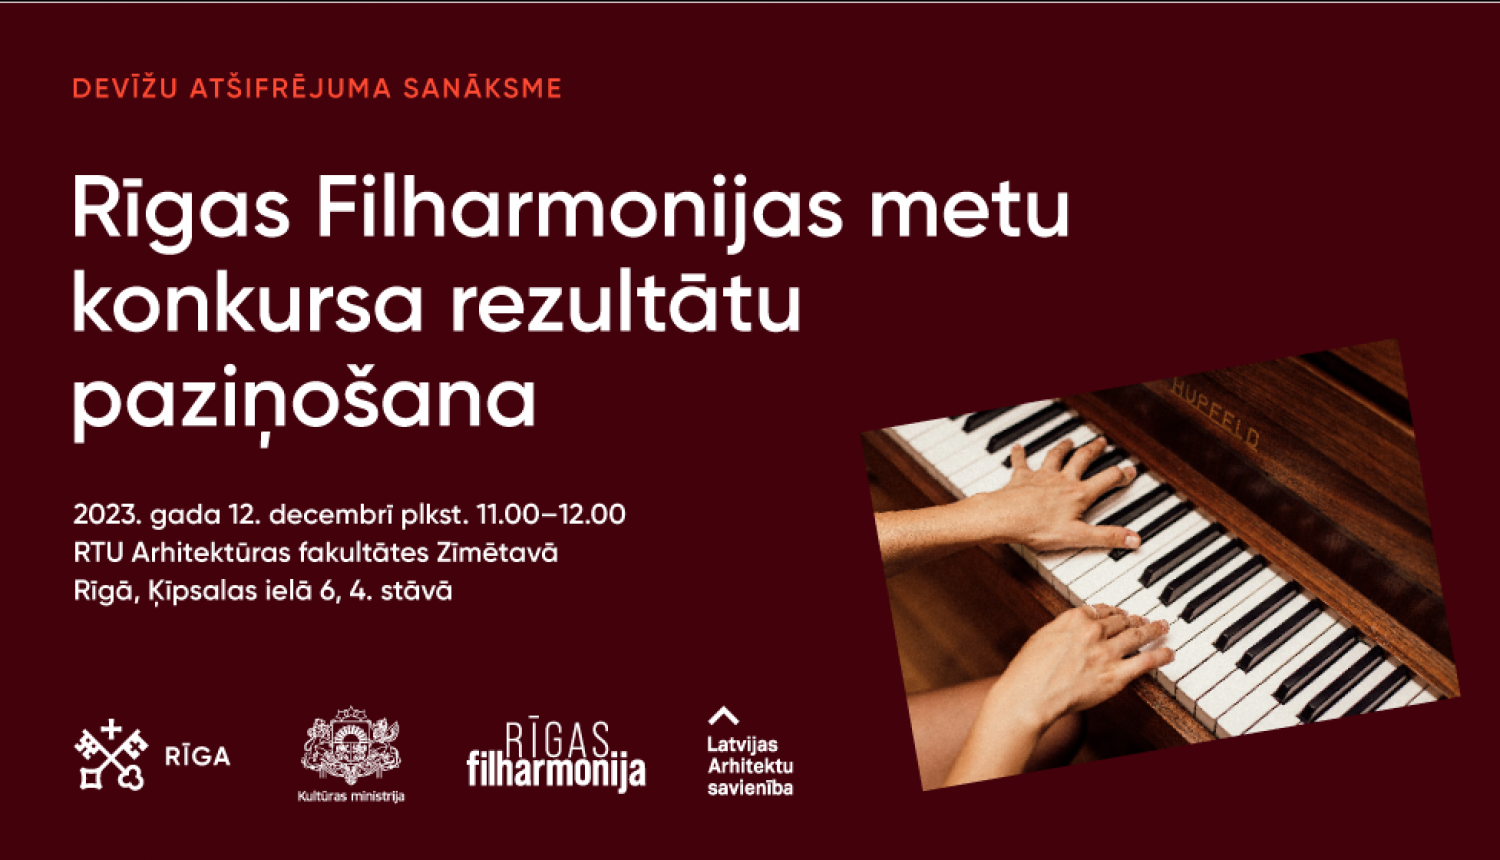 Metu konkursa “Rīgas filharmonija” devīžu atšifrējumu atvēršanas sanāksme notiks 12. decembrī plkst. 11.00 Rīgas Tehniskās universitātes Arhitektūras fakultātes Zīmētavā (4. stāvā), Ķīpsalas ielā 6.